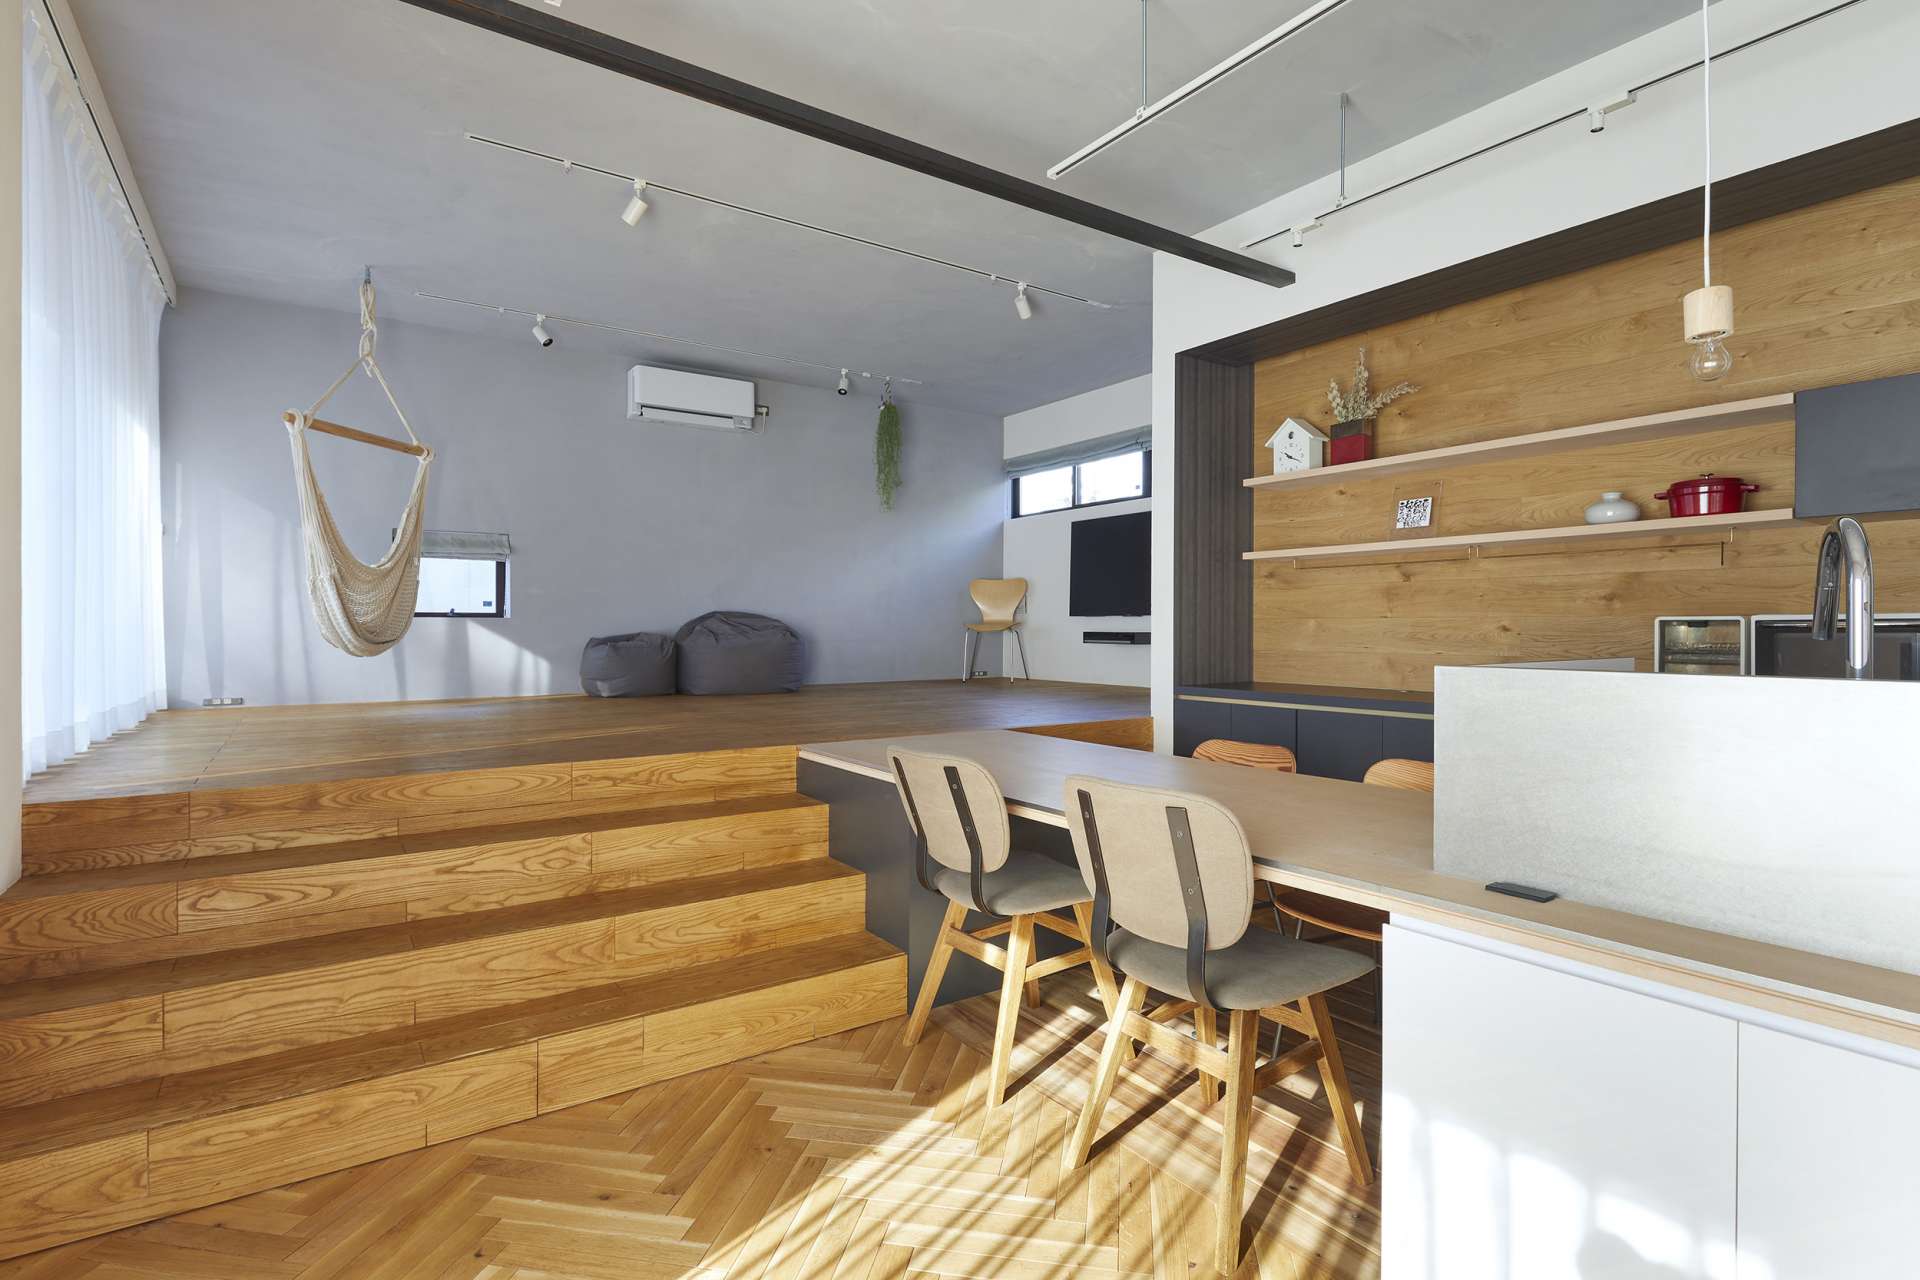 広島市で建築事務所とたてるおしゃれな一戸建て、マイホームの住宅設計はasazu design office